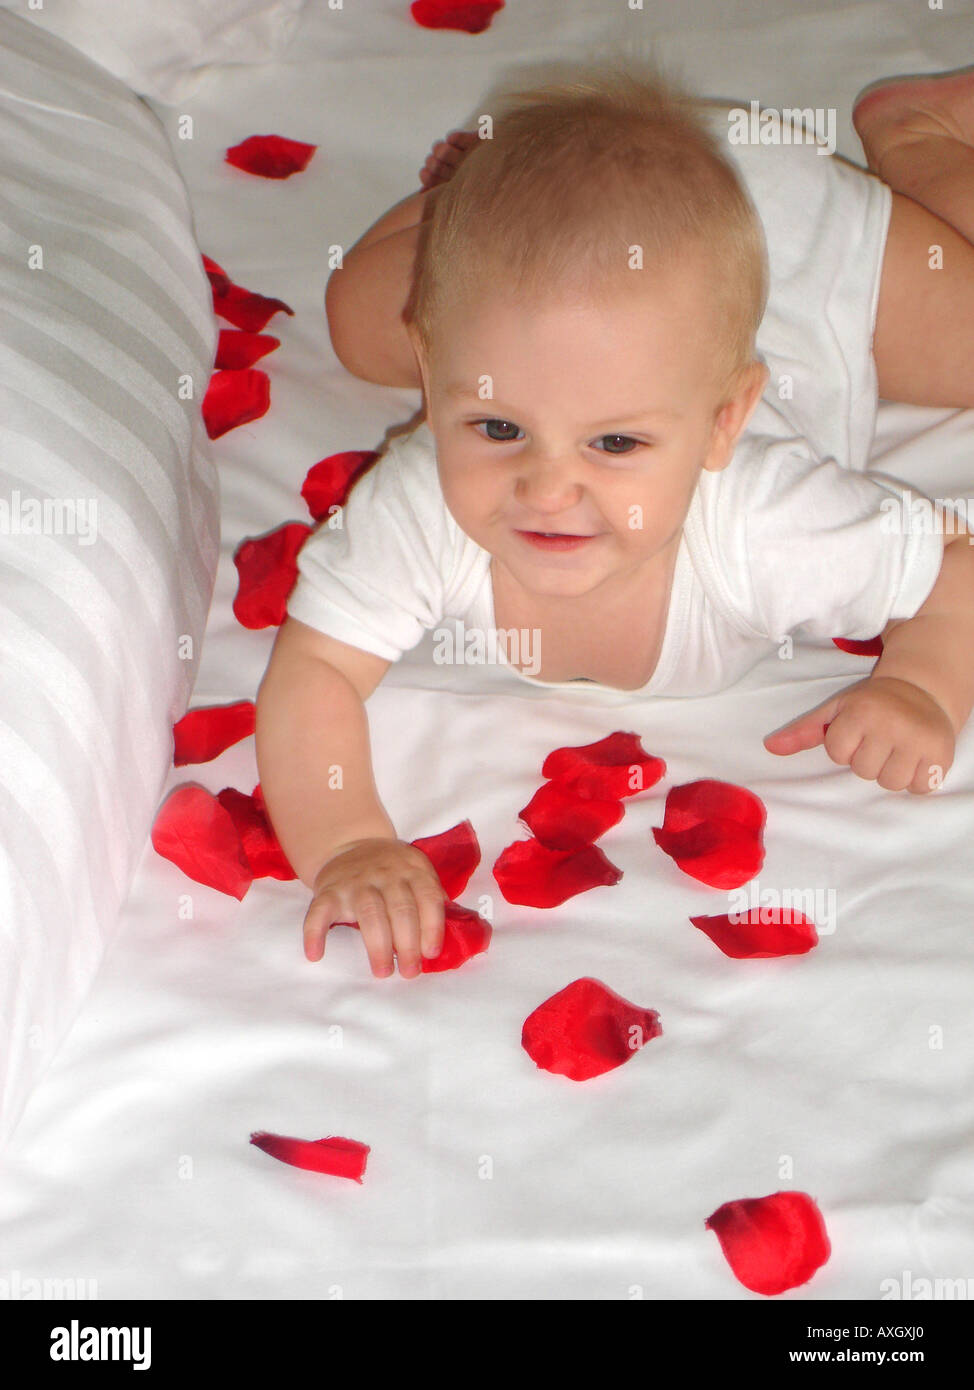 zuversichtlich 6 Monate altes Baby auf dem Bett mit roten Blüten Zufriedenes 6 Monate Altes Baby Auf Bett Mit Roten Blütenblättern Stockfoto